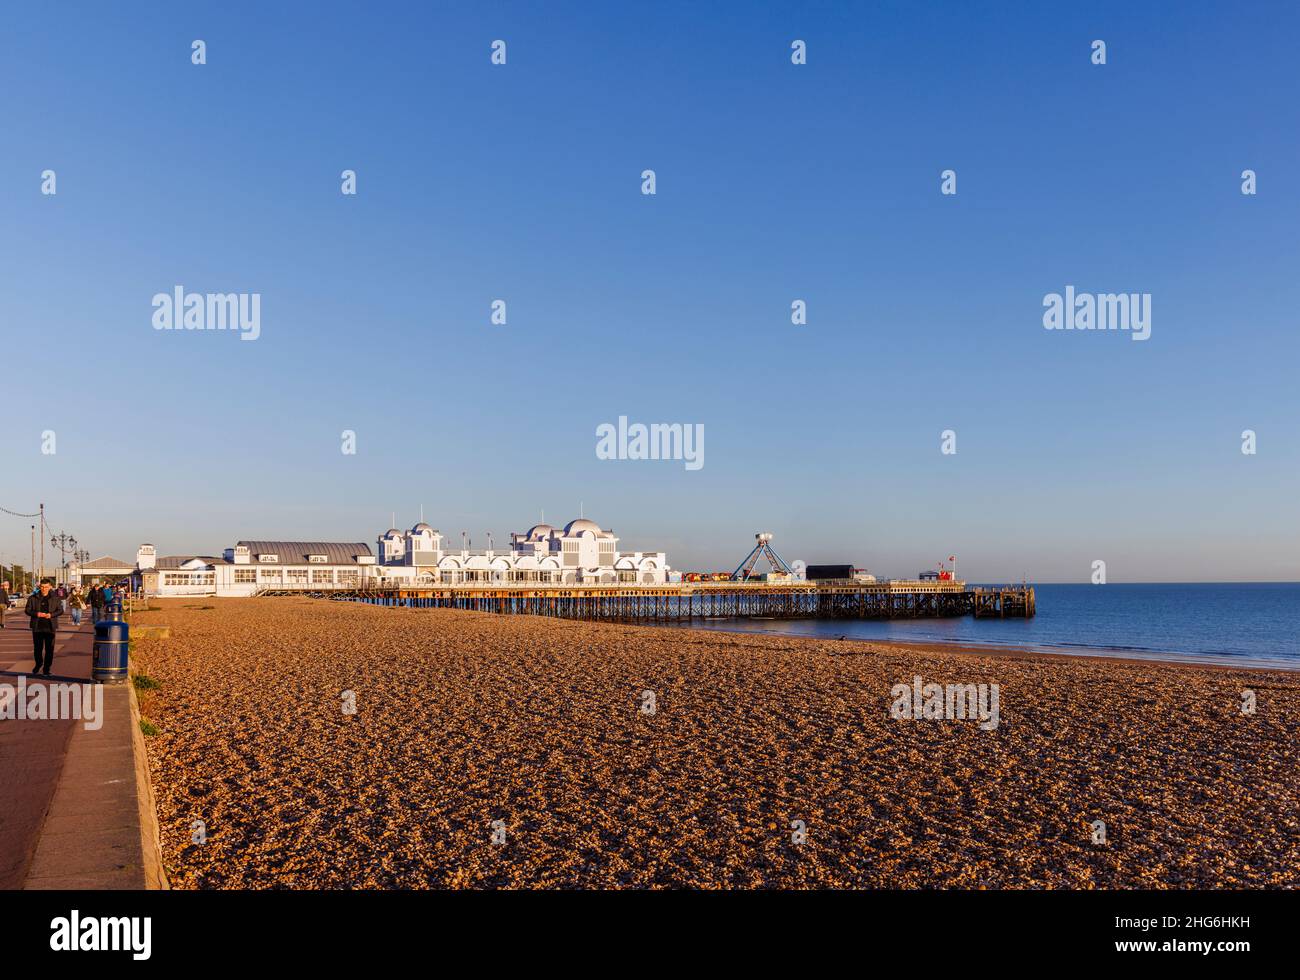 South Parade Pier sul lungomare e la spiaggia di pietra a Southsea, Portsmouth, Hampshire, costa meridionale Inghilterra in una giornata di sole con cielo blu nuvoloso Foto Stock